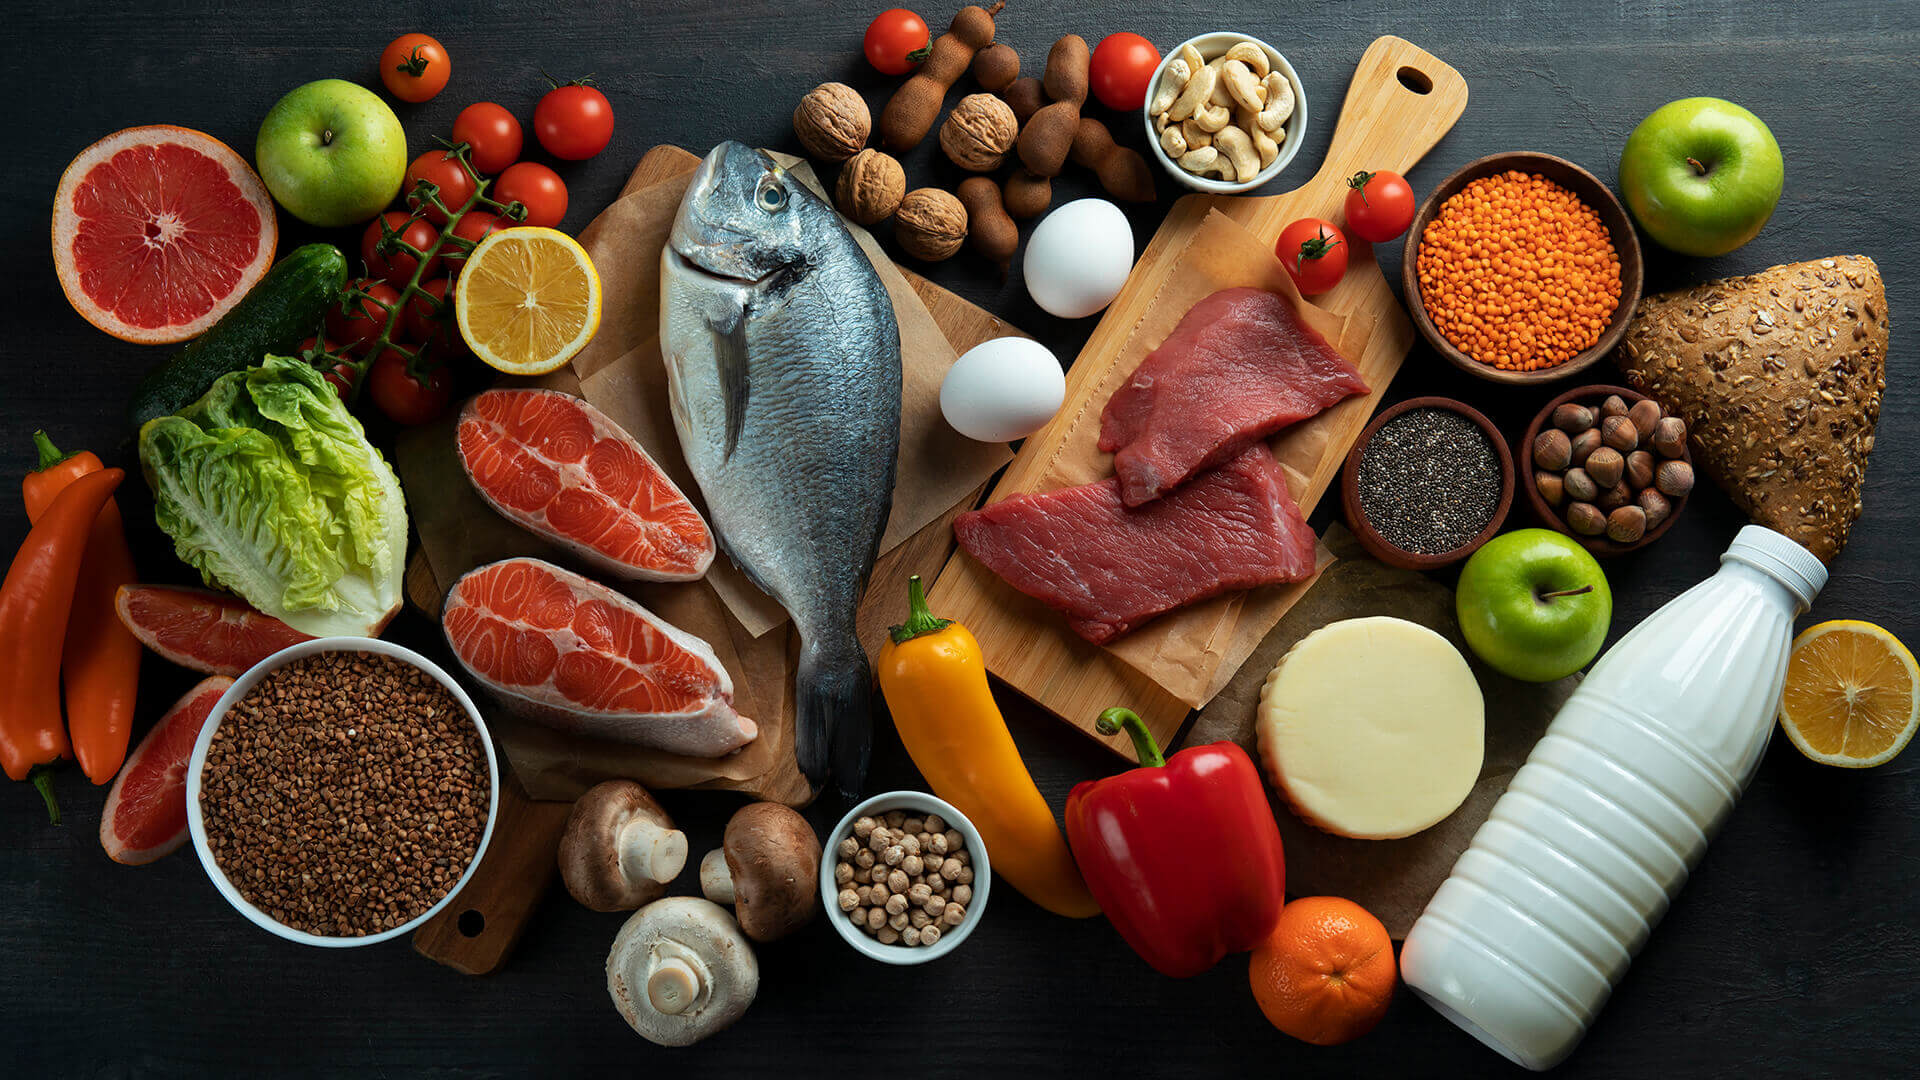 Dieta sport protein - catering dietetyczny dla sportowców